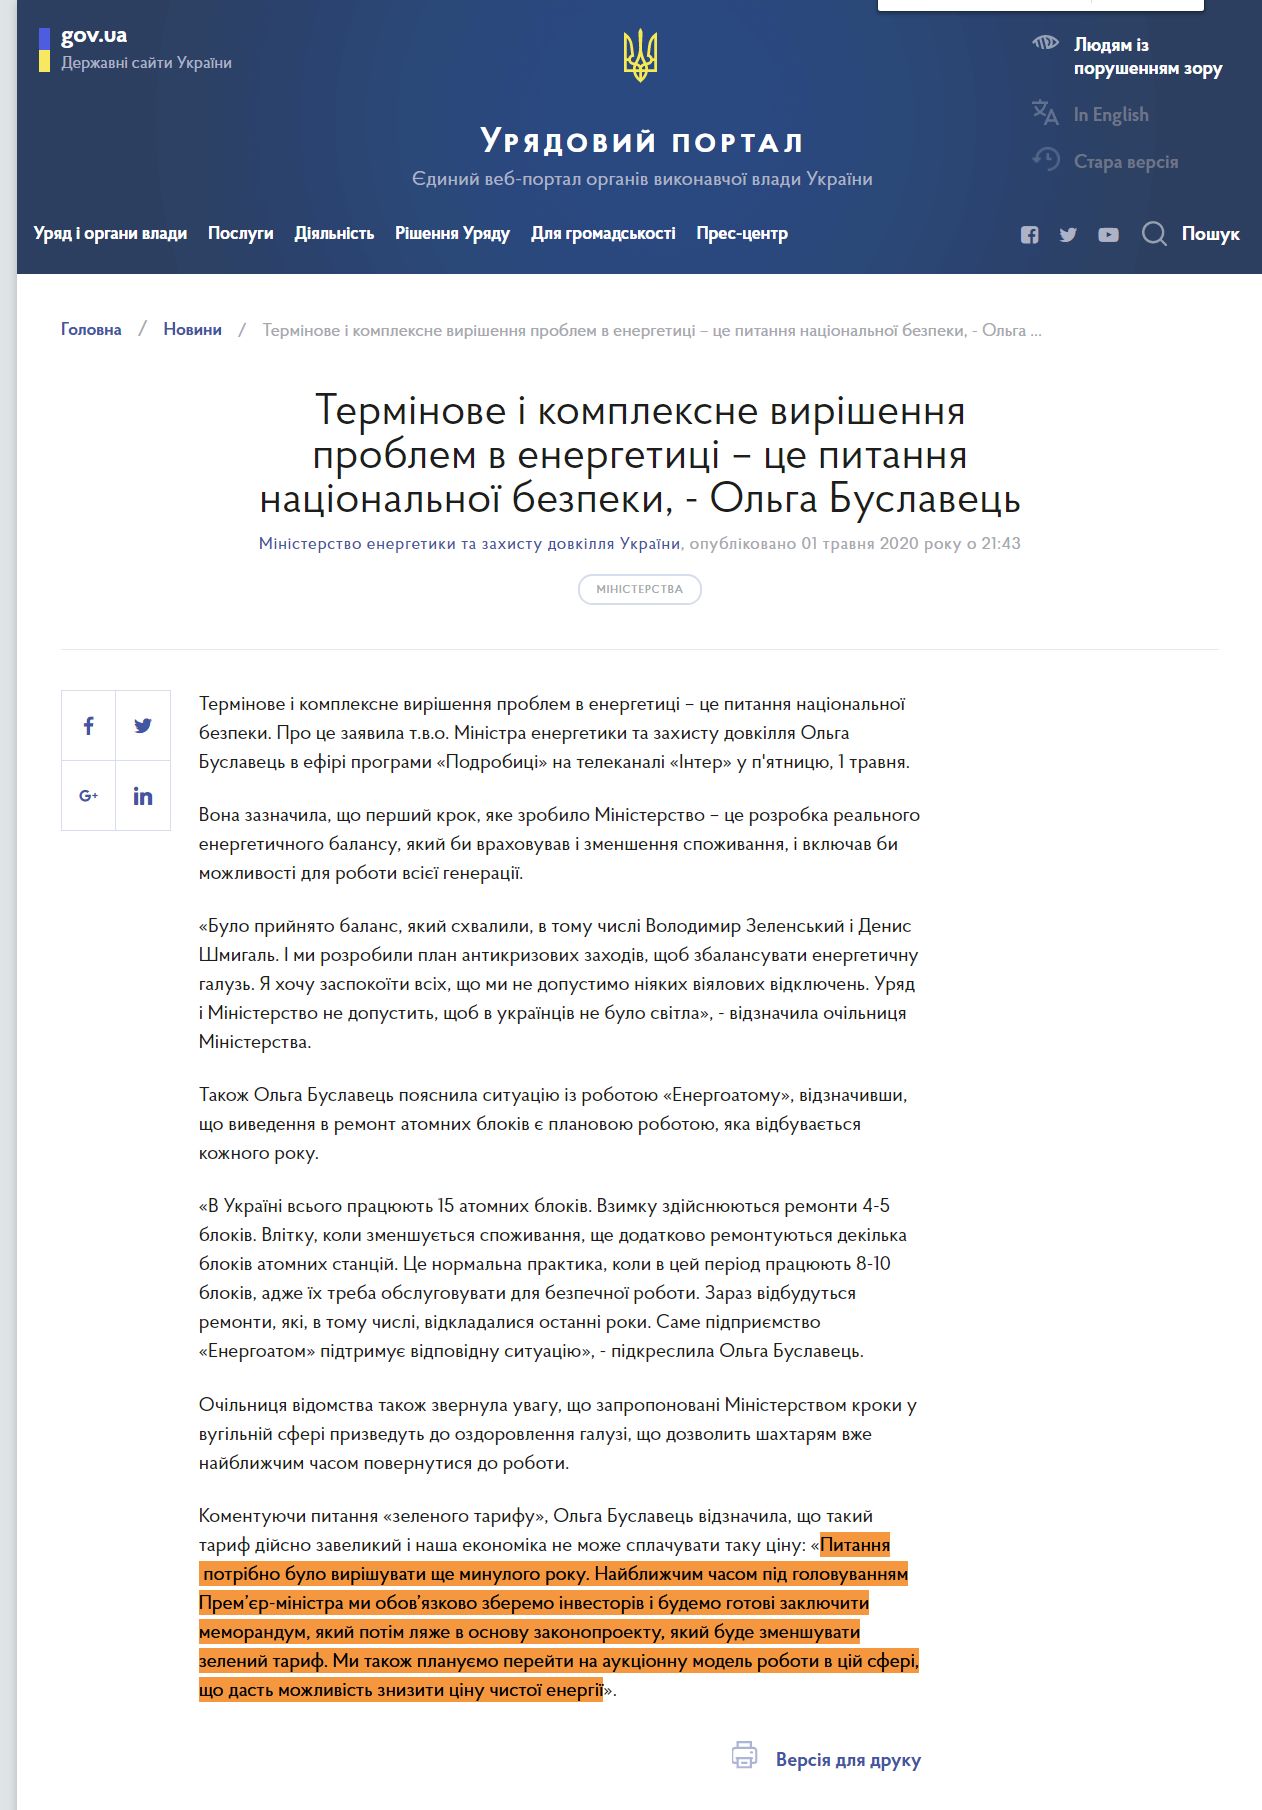 https://www.kmu.gov.ua/news/terminove-i-kompleksne-virishennya-problem-v-energetici-ce-pitannya-nacionalnoyi-bezpeki-olga-buslavec